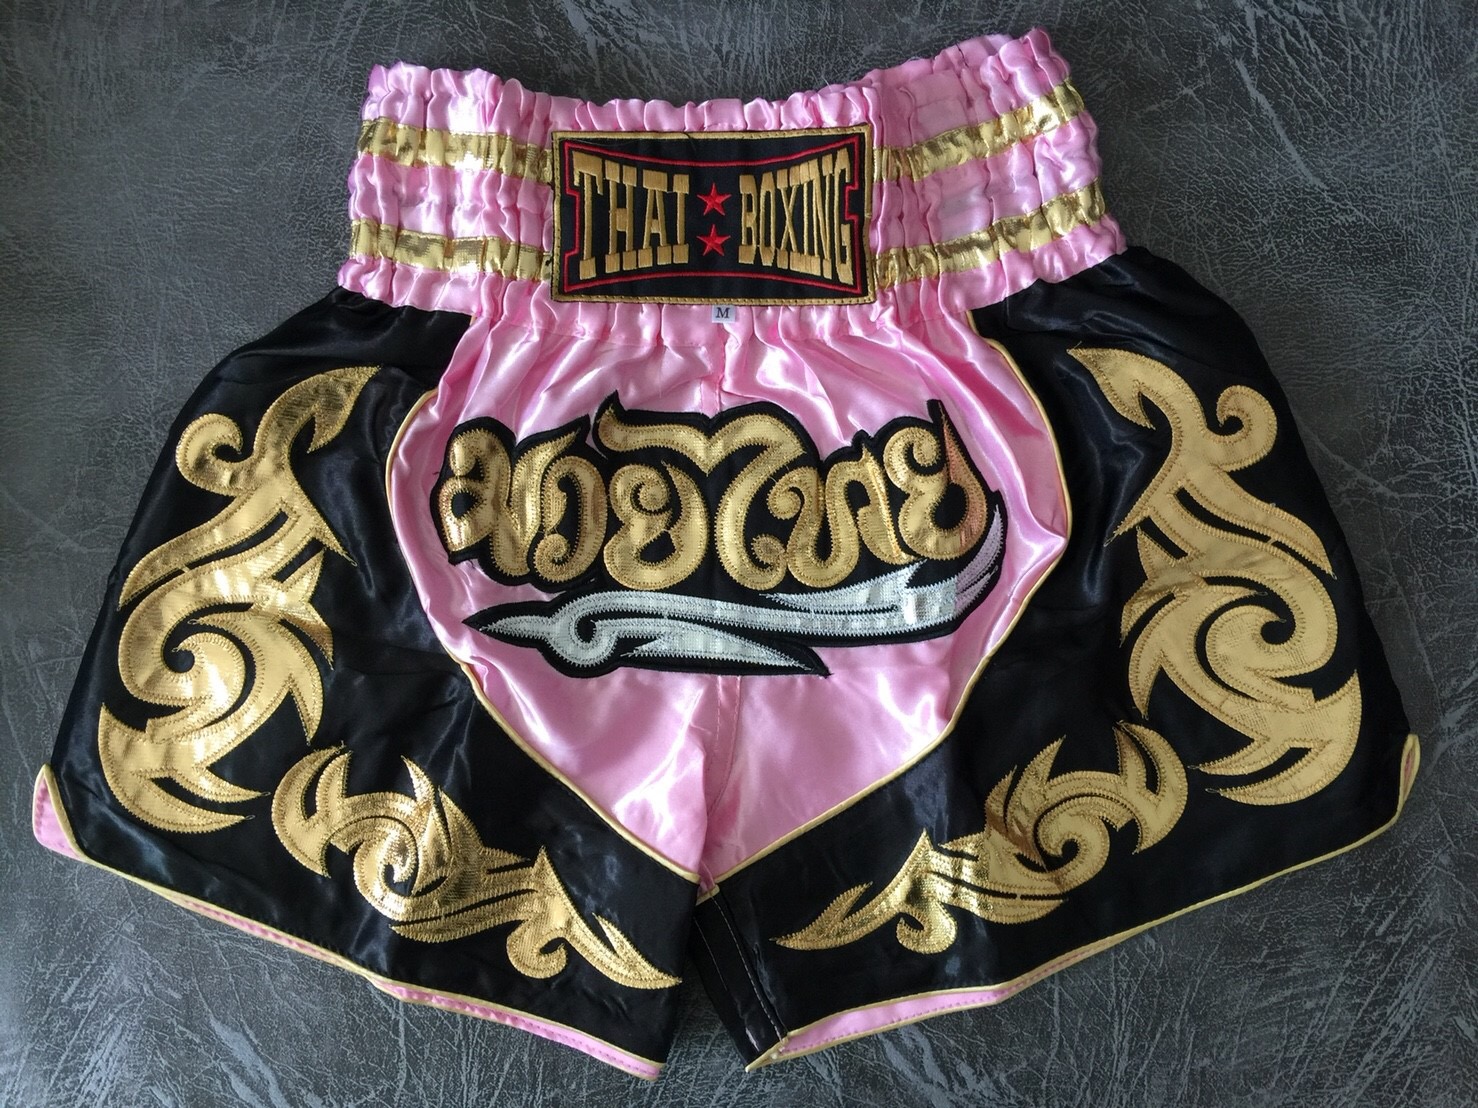 กางเกงมวย กางเกงนักมวย กางเกงมวยไทย ไซส์ผู้ใหญ่ Thai fight Boxing shorts M-XXXL